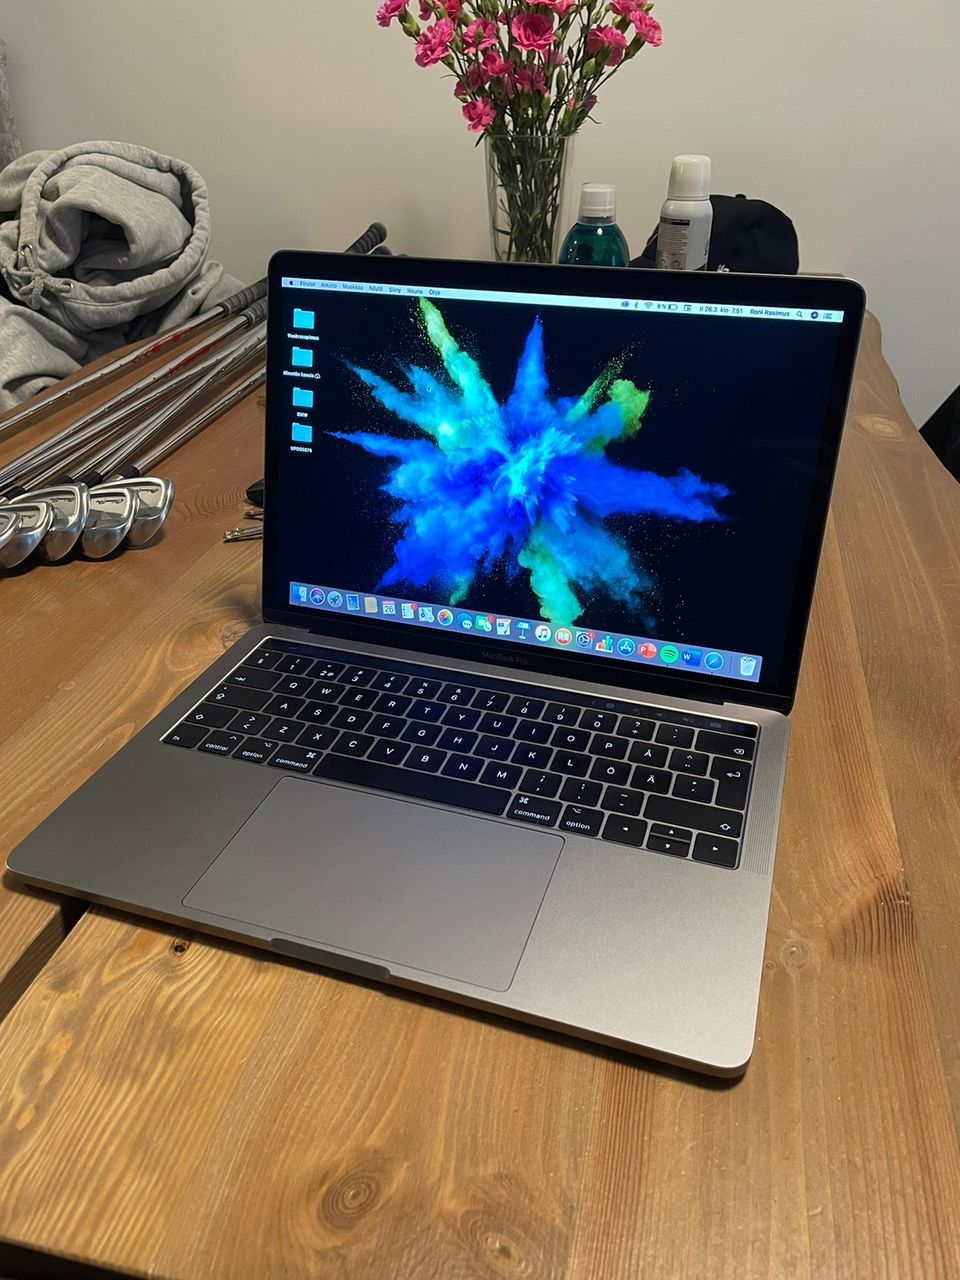 Macbook Pro 13” Touchbar 3,1GHz Intel Core i5, 8GT